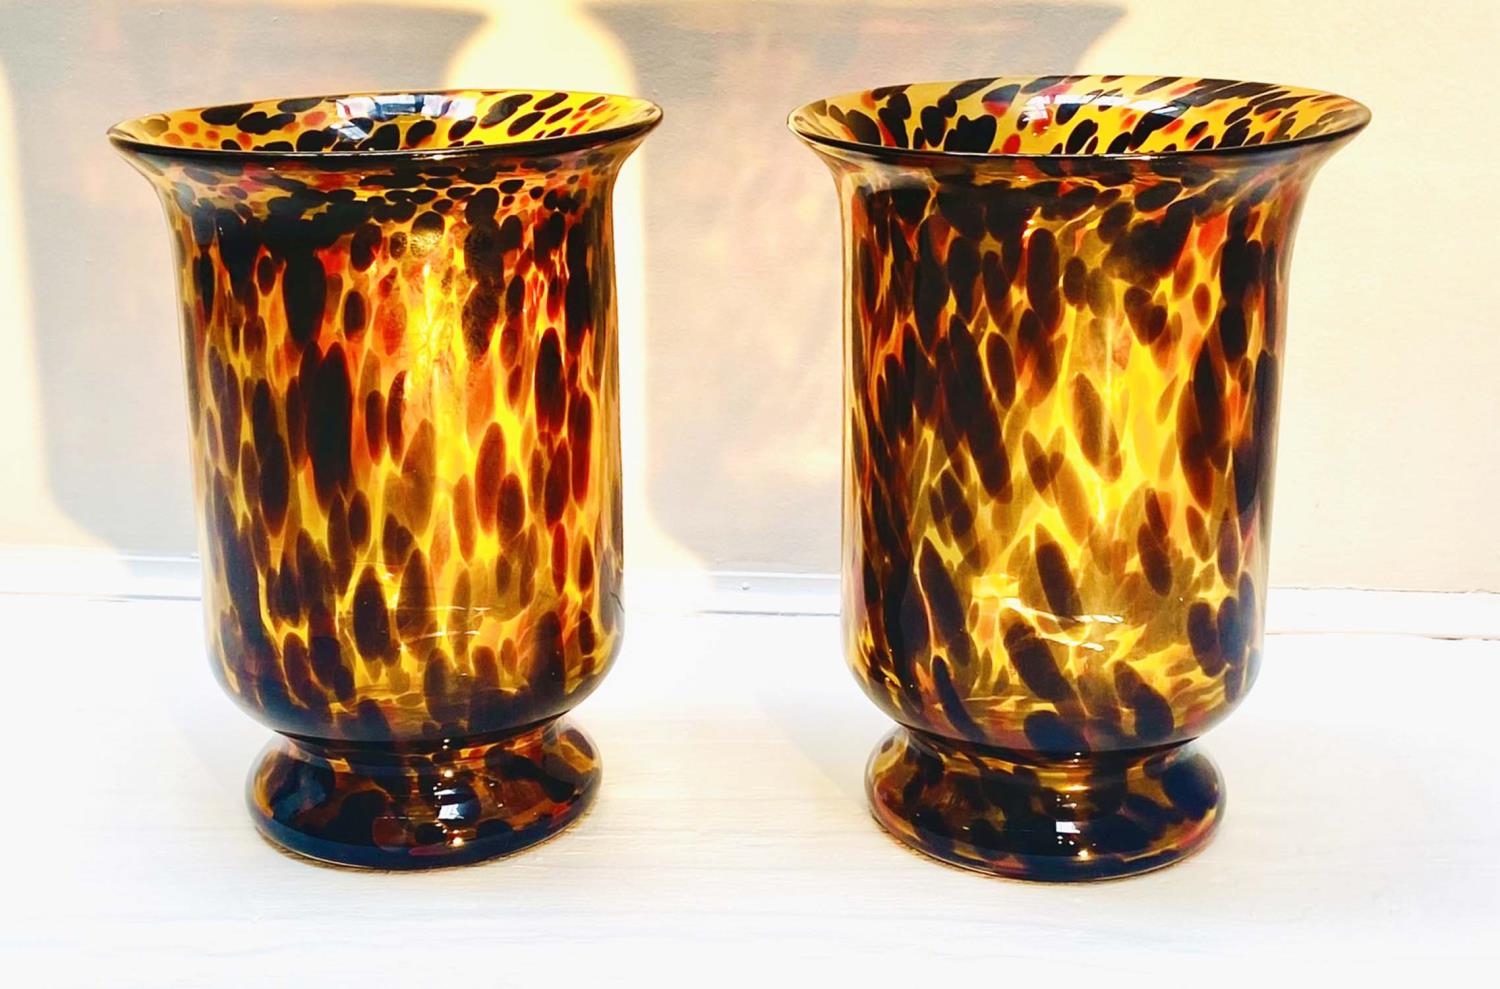 VASES, a pair, 30cm high, 22cm diameter, Murano style tortoiseshell glass. (2) - Image 5 of 7